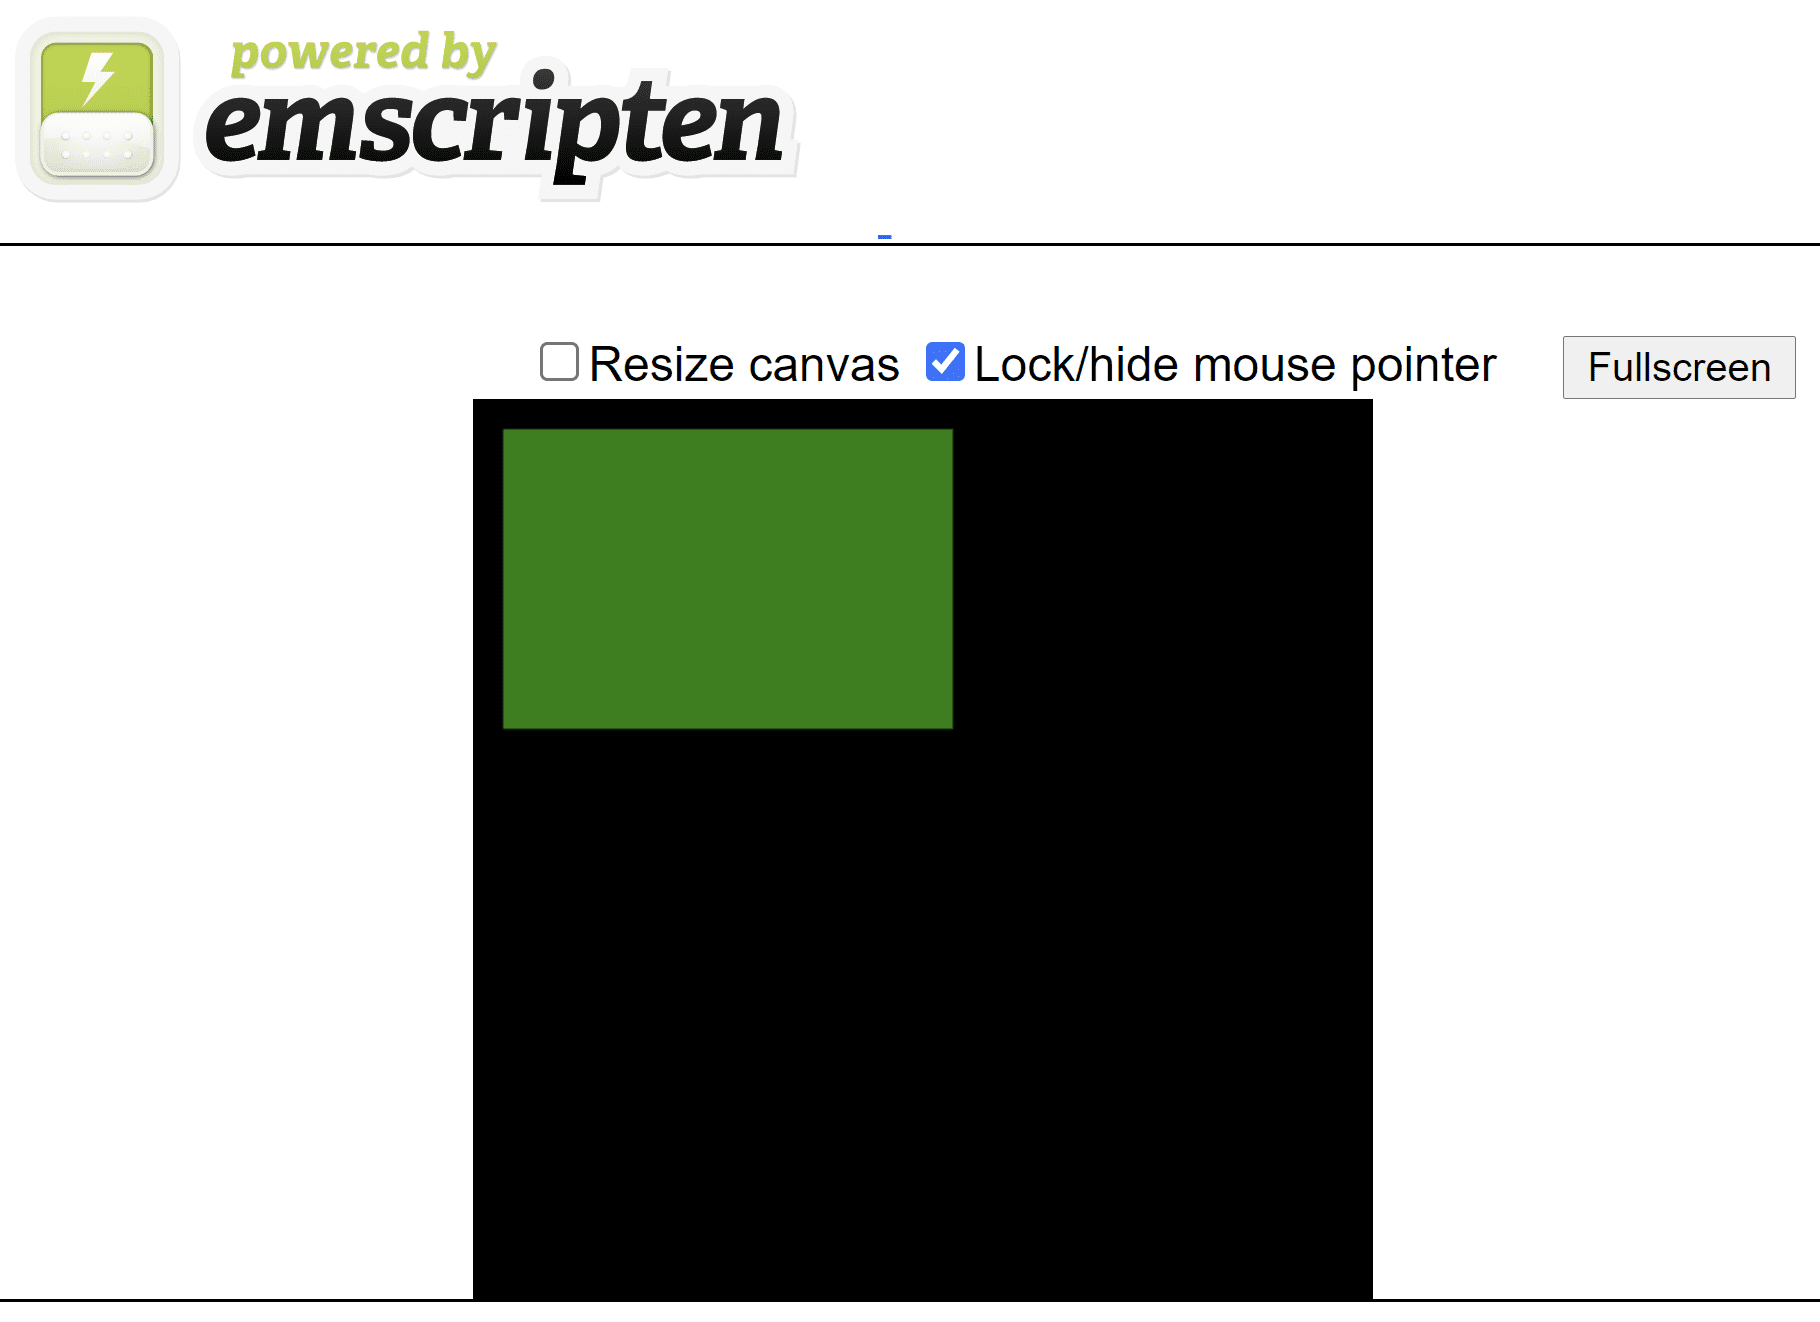 Trang HTML do emscripten tạo cho thấy một hình chữ nhật màu xanh lục trên canvas hình vuông màu đen.